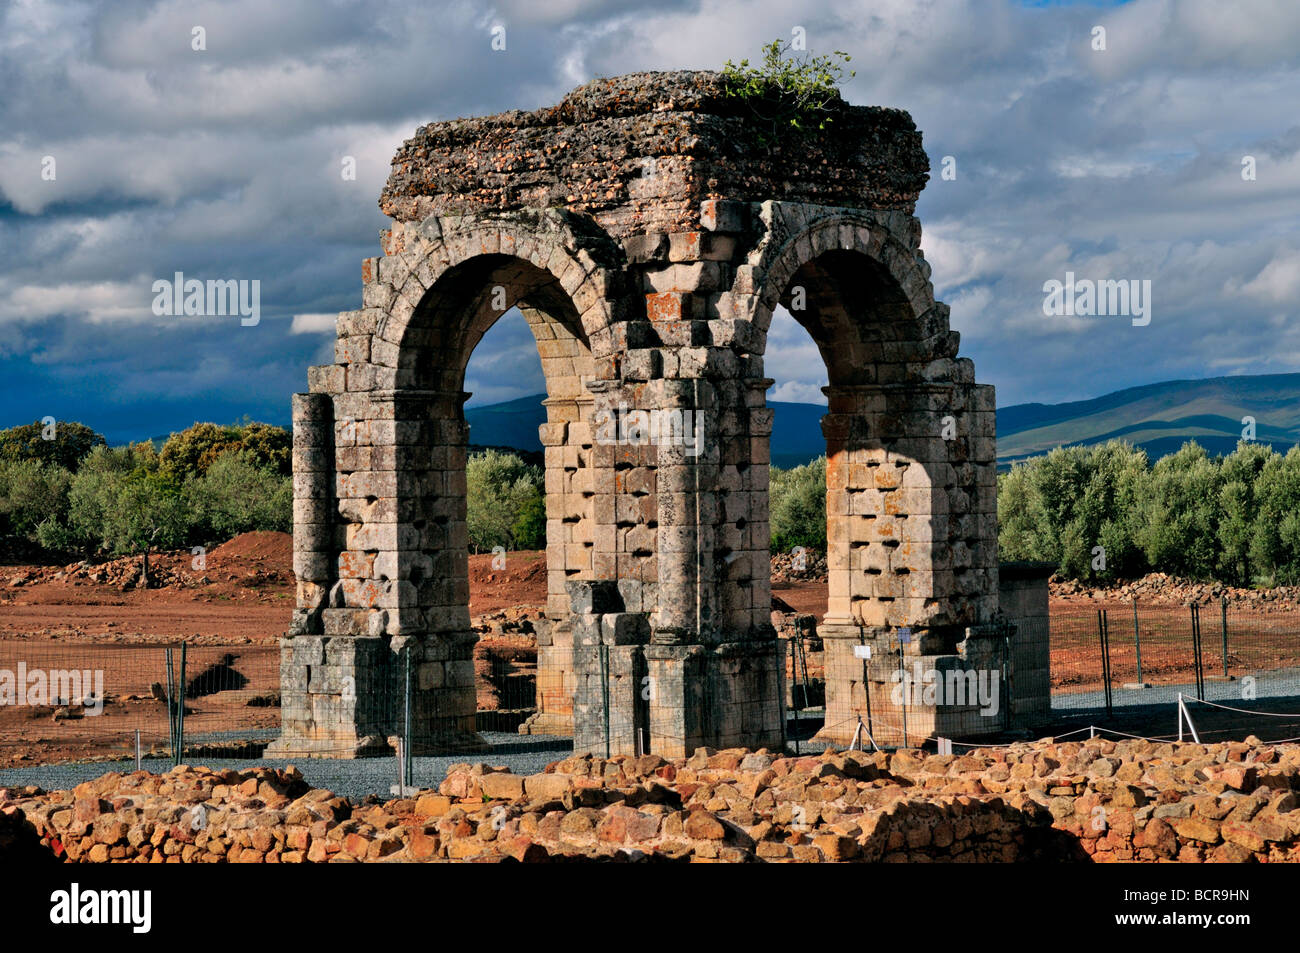 Spagna, Via de la Plata: arco romano Arco de Cáparra nella provincia spagnola di Cáceres Foto Stock